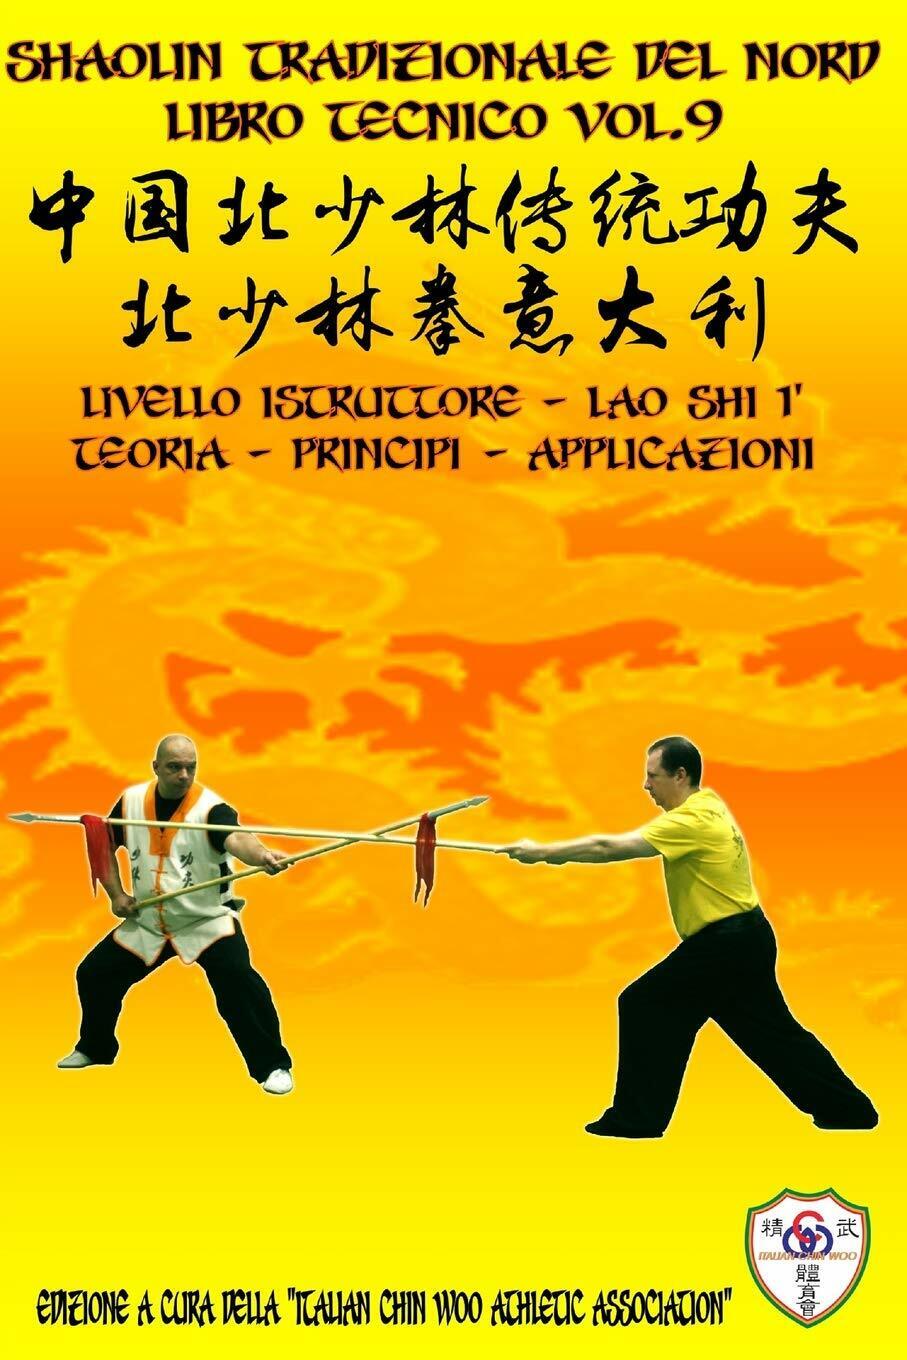 Shaolin Tradizionale del Nord Vol.9: Livello Istruttore - Lao Shi 1 di Constanti